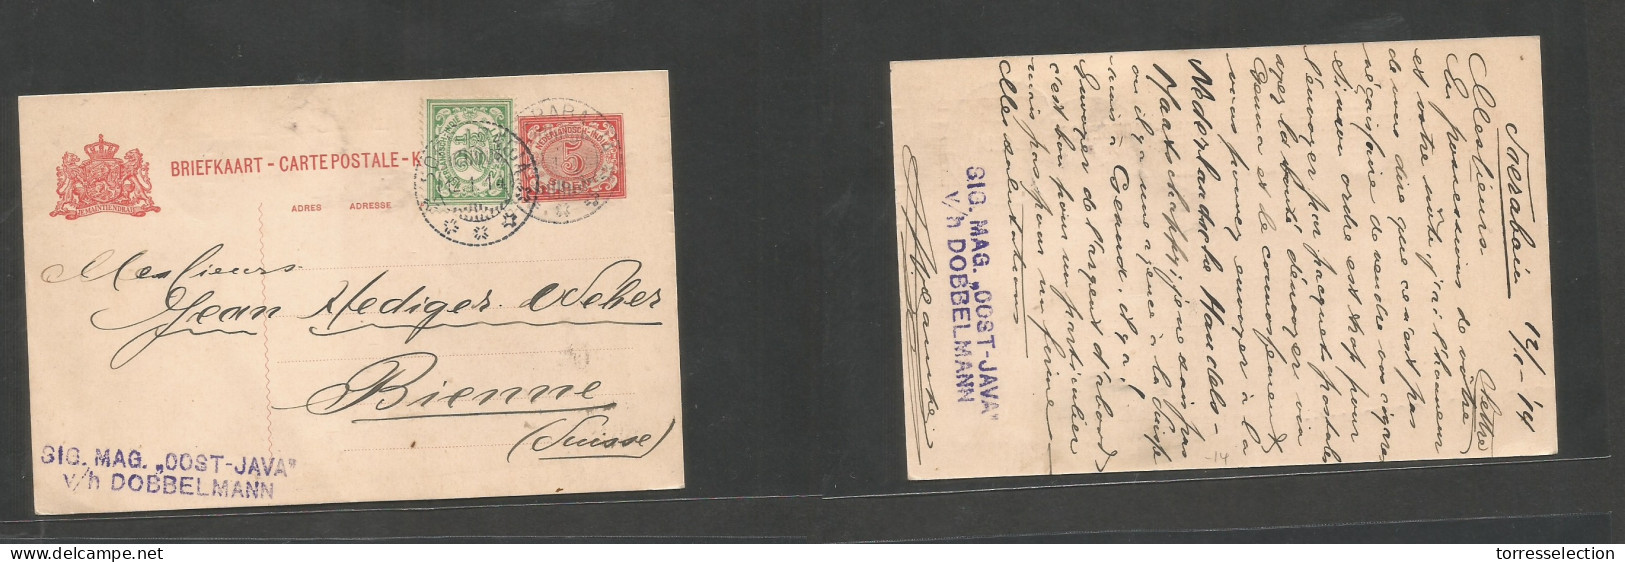 DUTCH INDIES. 1914 (12 Apr) Soerabaja - Switzerland, Bienne 5c Red Stat Card + 2 1/2c Green Adtl, Cds. Fine Used. - Niederländisch-Indien